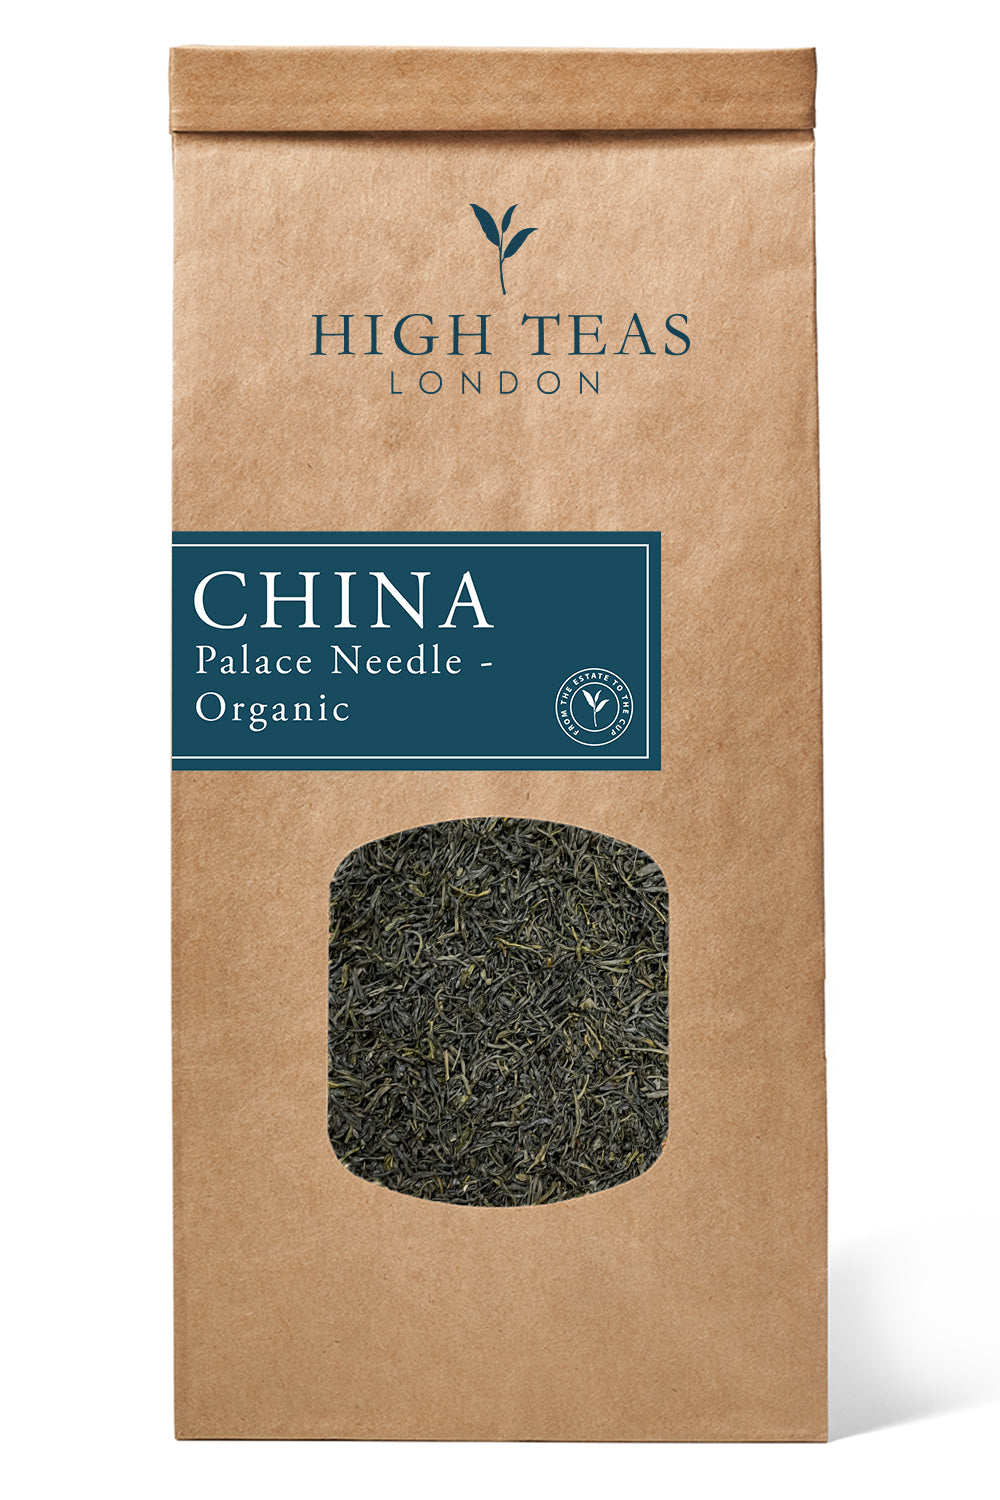 Palace Needle - Organic-250g-Loose Leaf Tea-High Teas